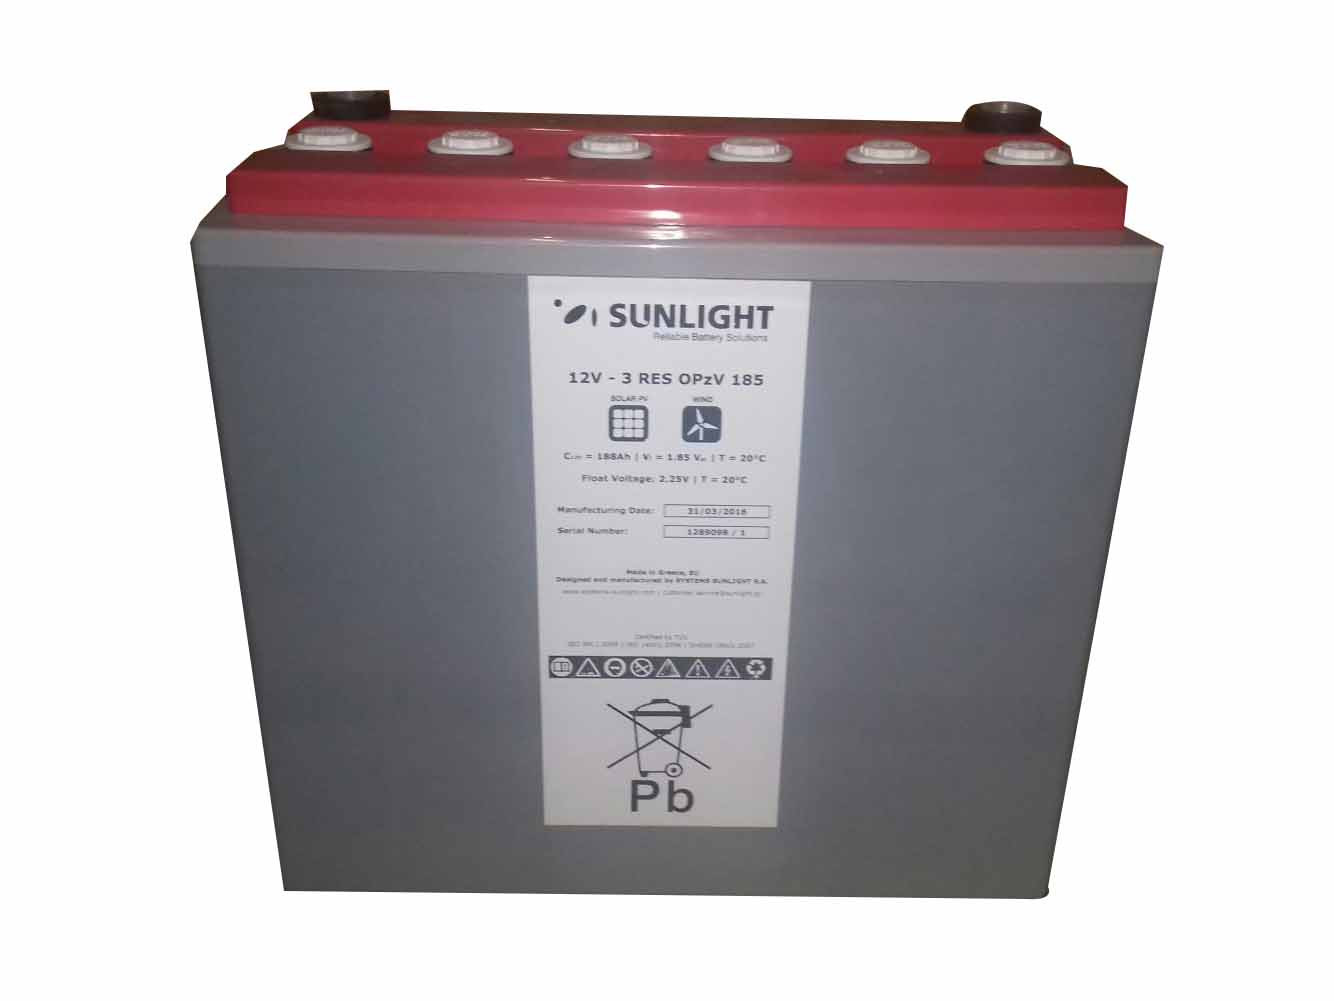 Sunlight 12V 3 RES OPzV 185 Ah Solar Battery